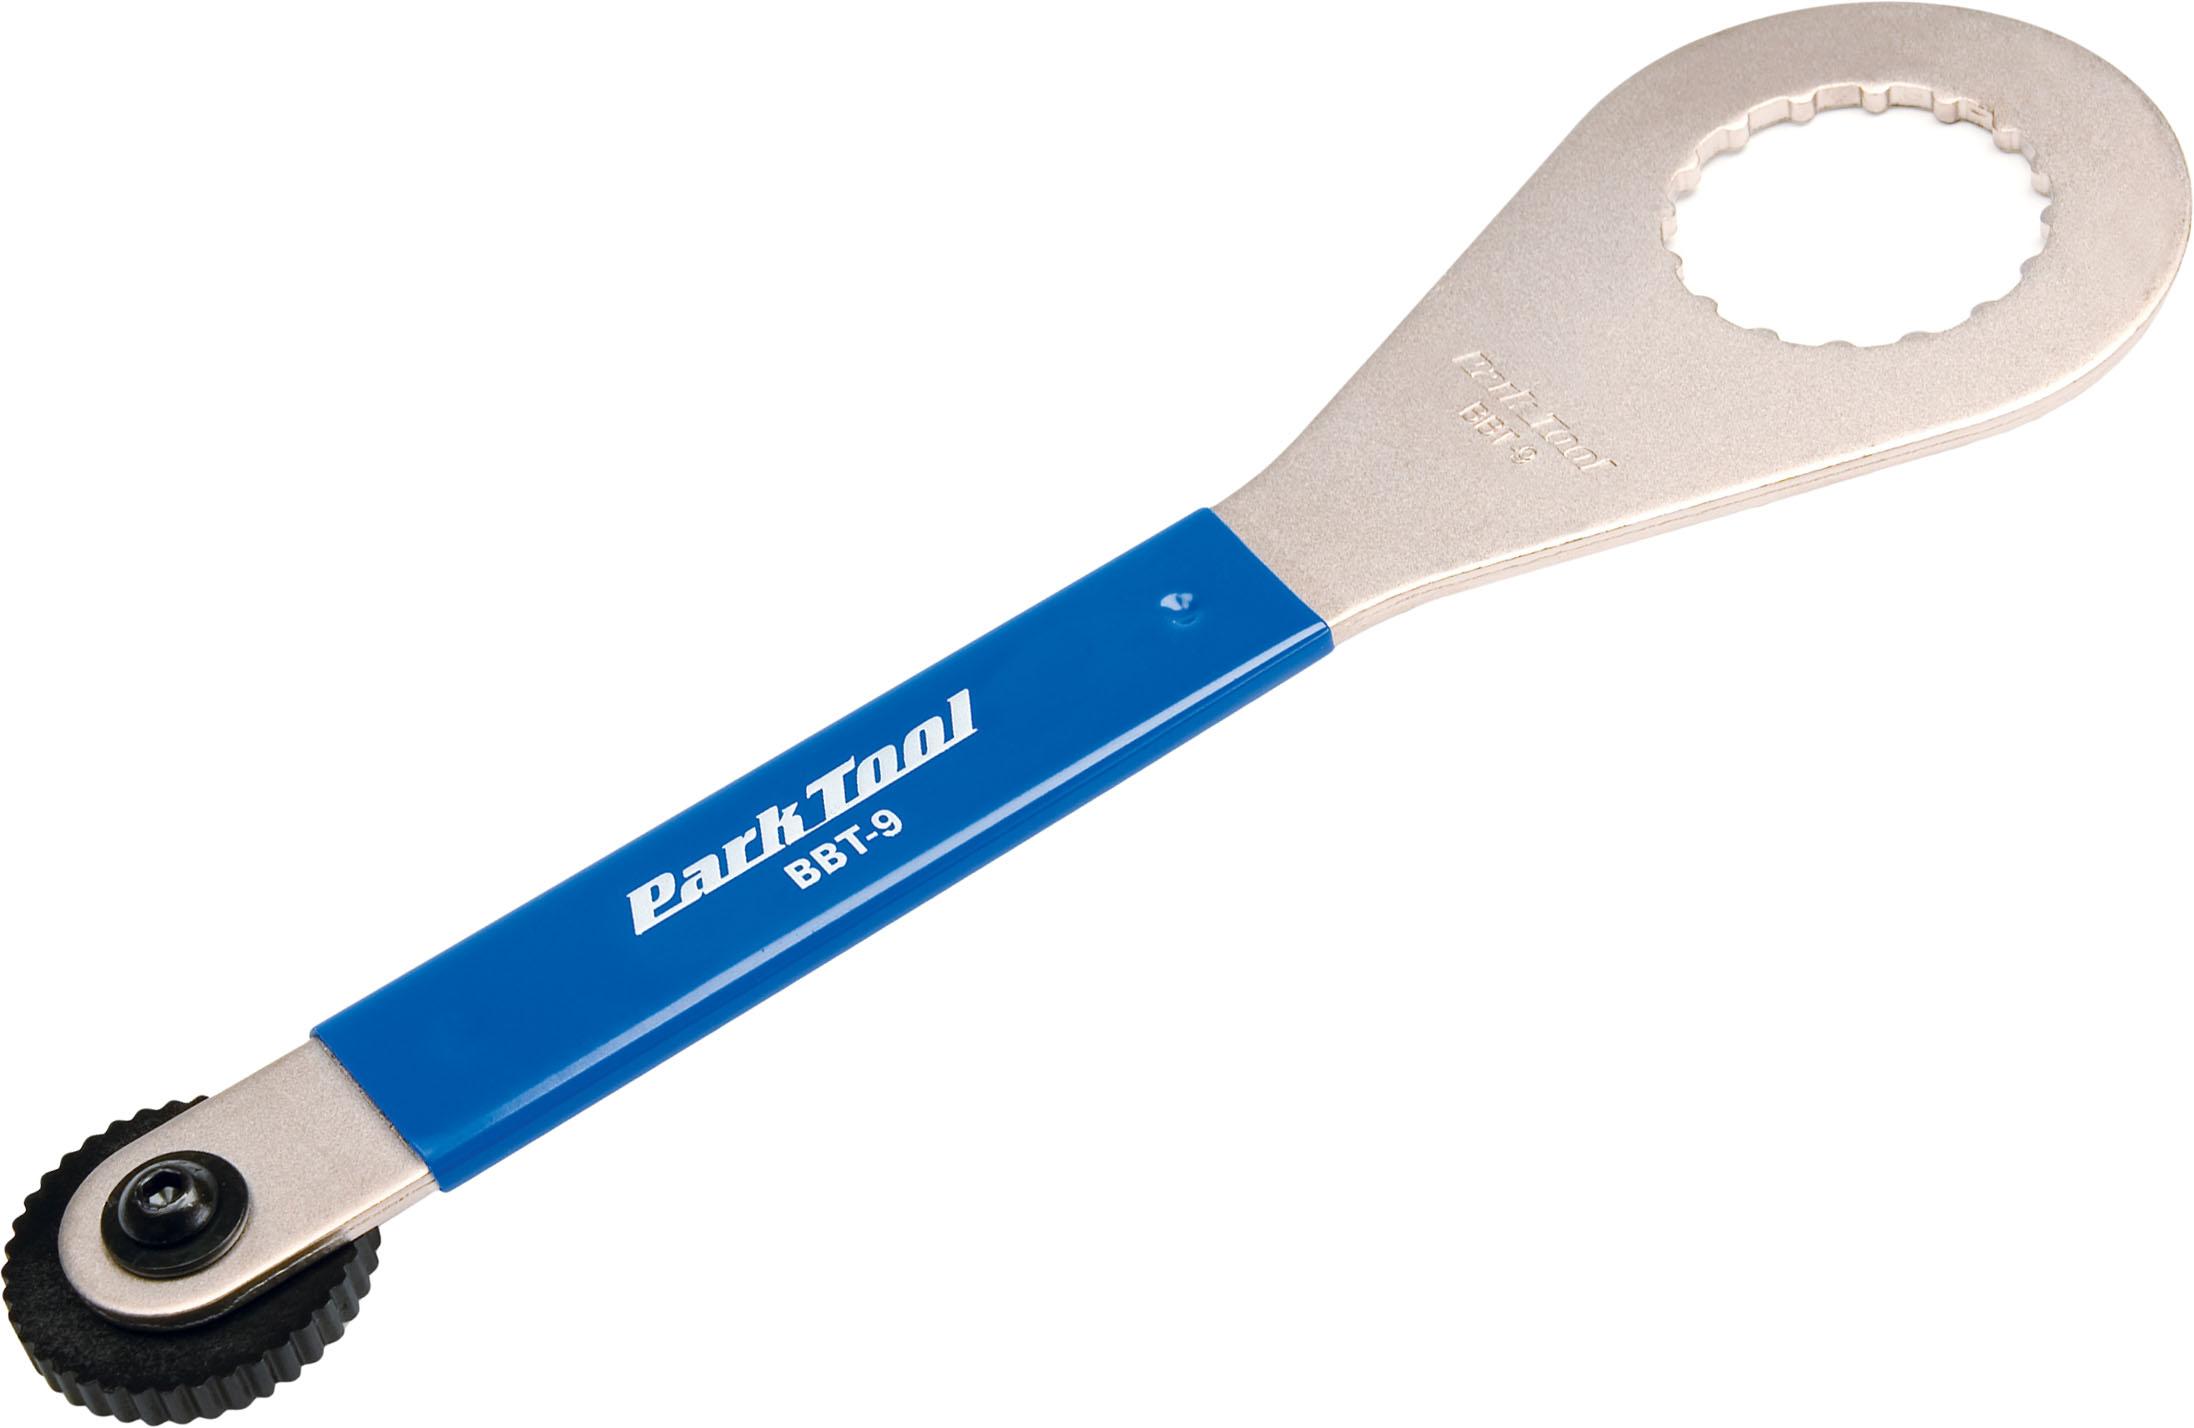 Park Tool Bottom Bracket Tool Bbt-9 - Silver